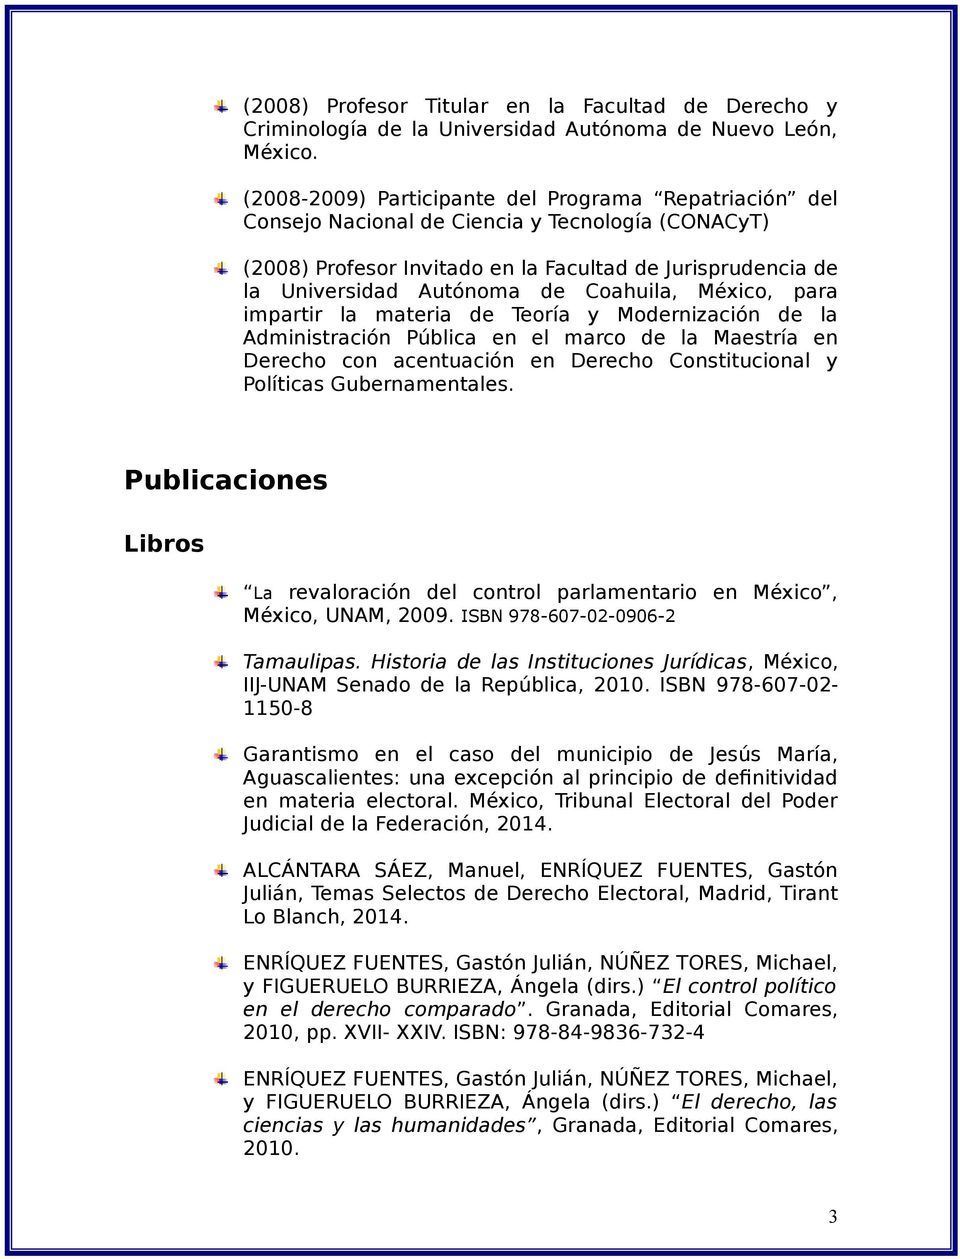 Coahuila, México, para impartir la materia de Teoría y Modernización de la Administración Pública en el marco de la Maestría en Derecho con acentuación en Derecho Constitucional y Políticas